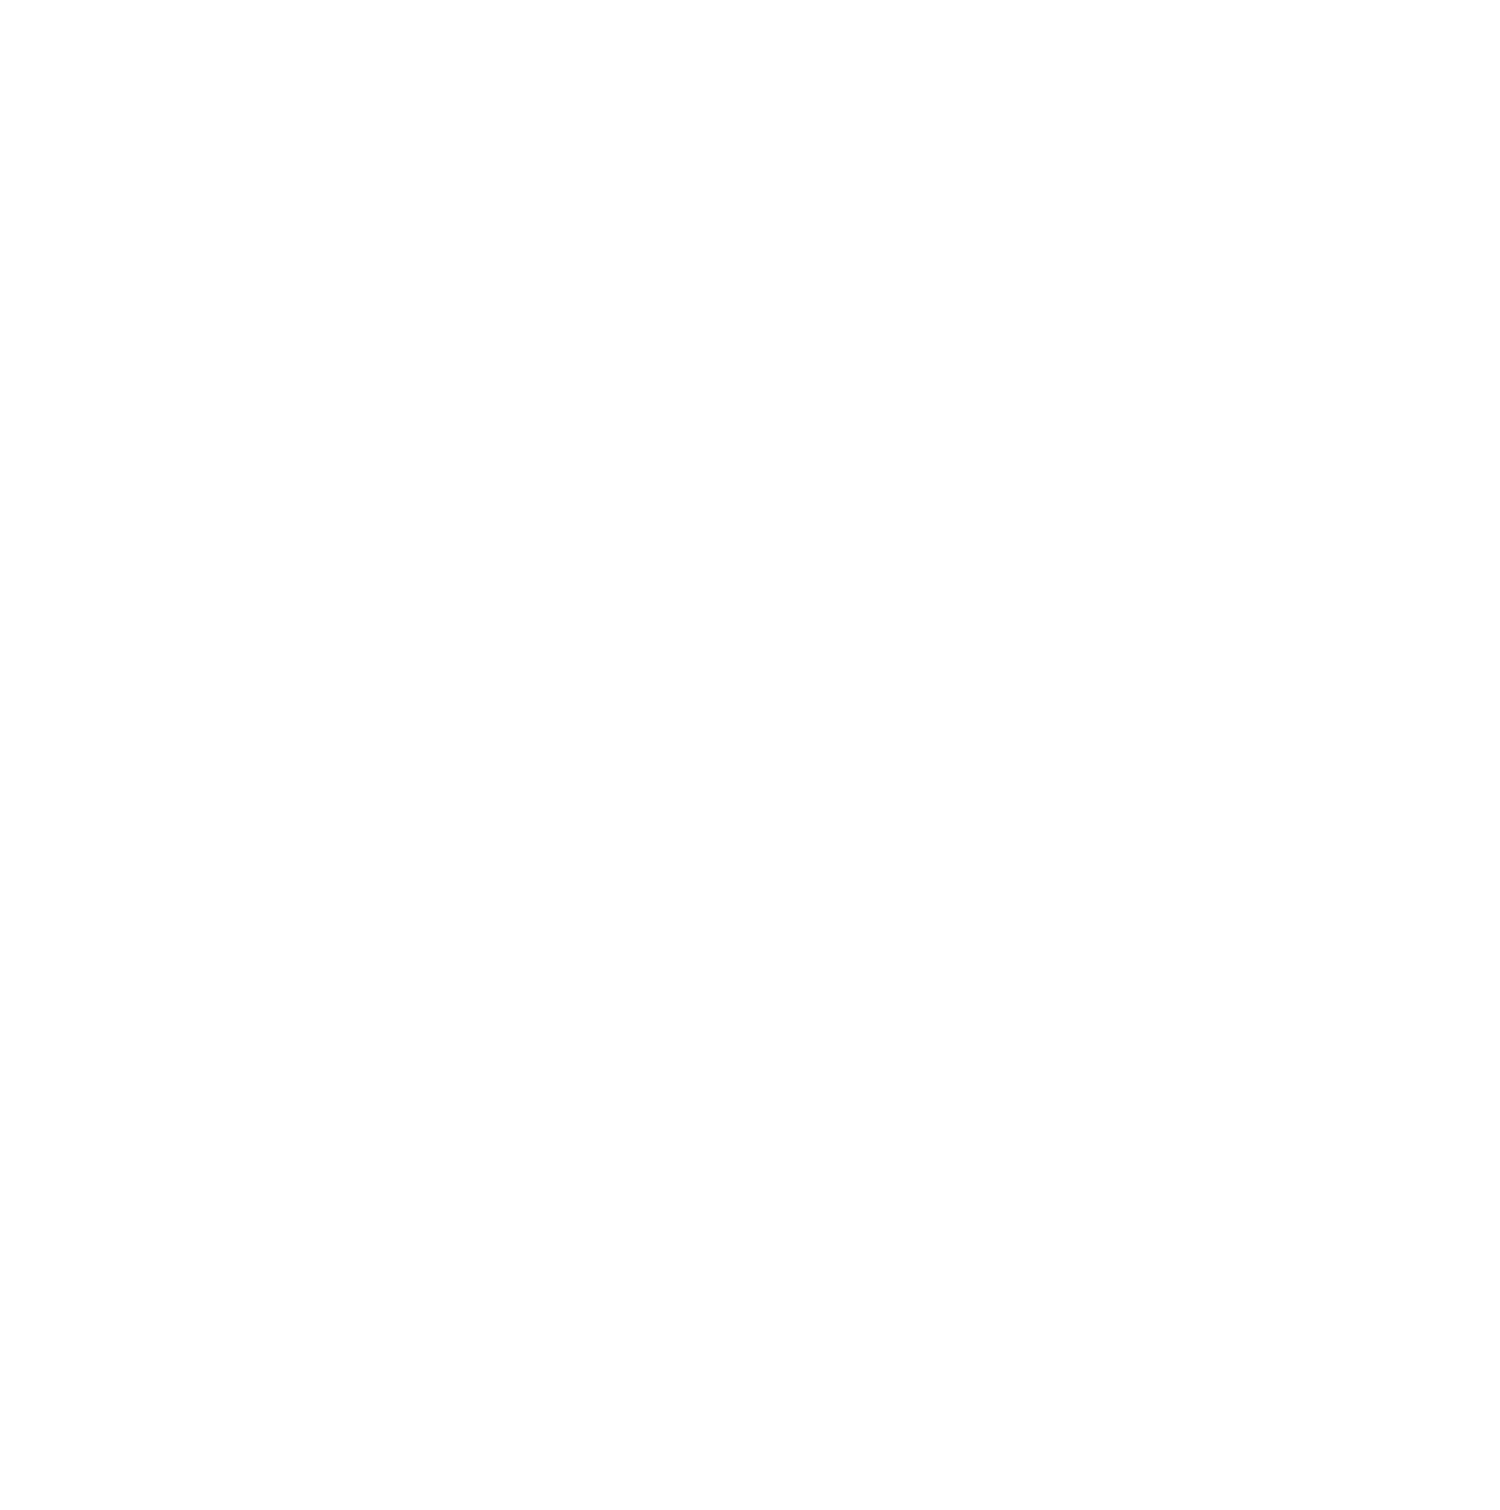 Producciones Monotipo